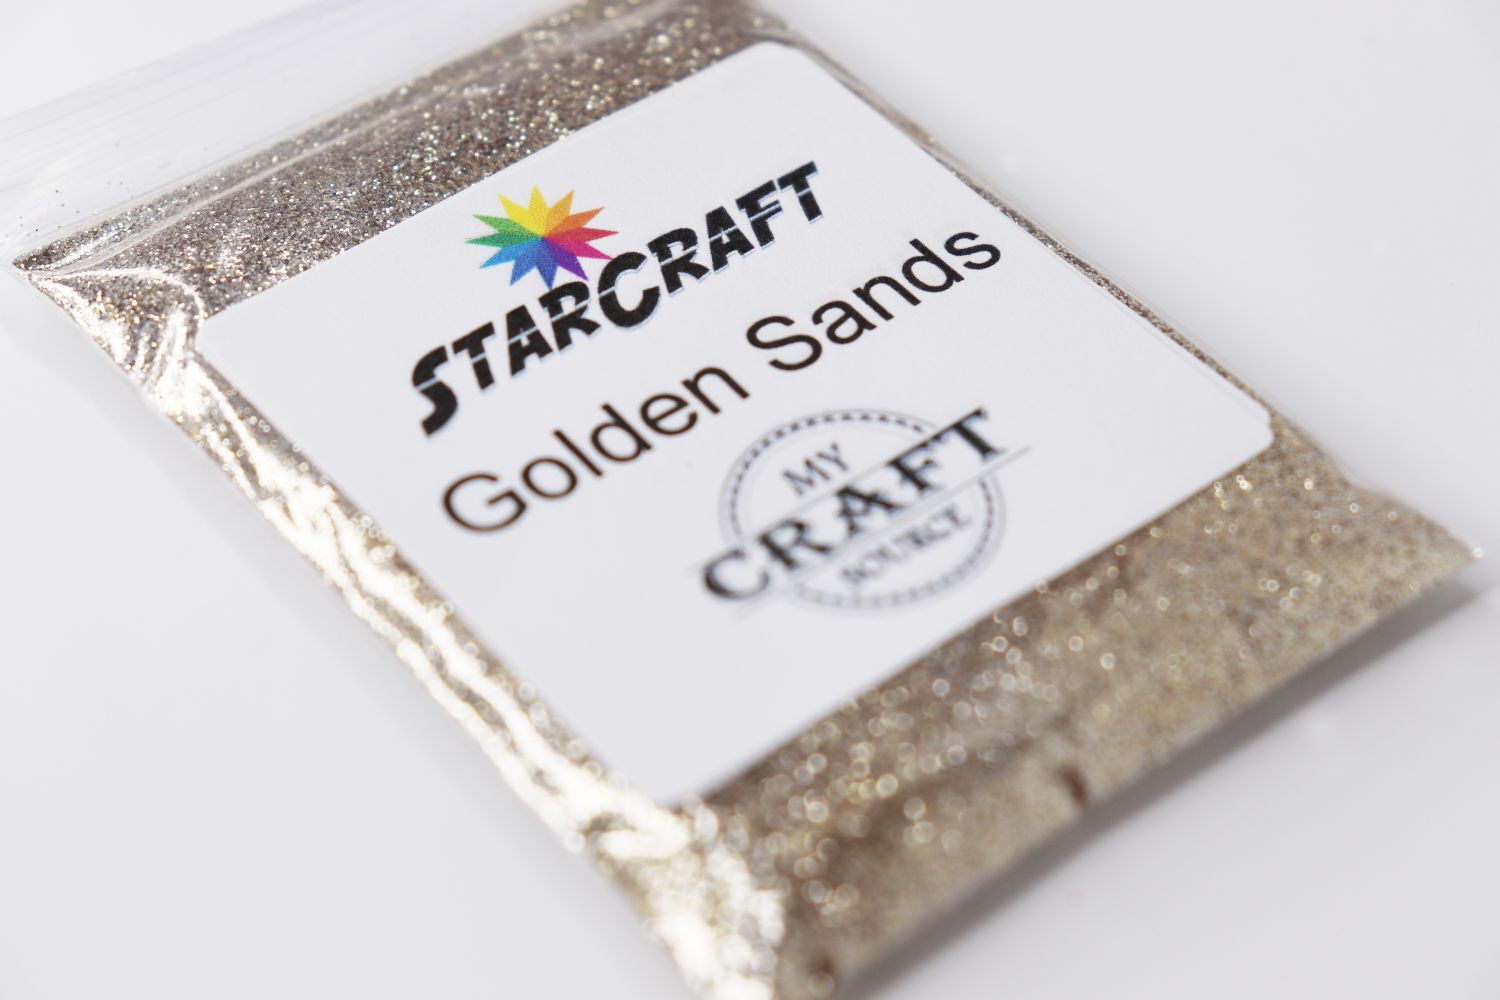 StarCraft Metallic Glitter - Golden Sands - 0.5 oz